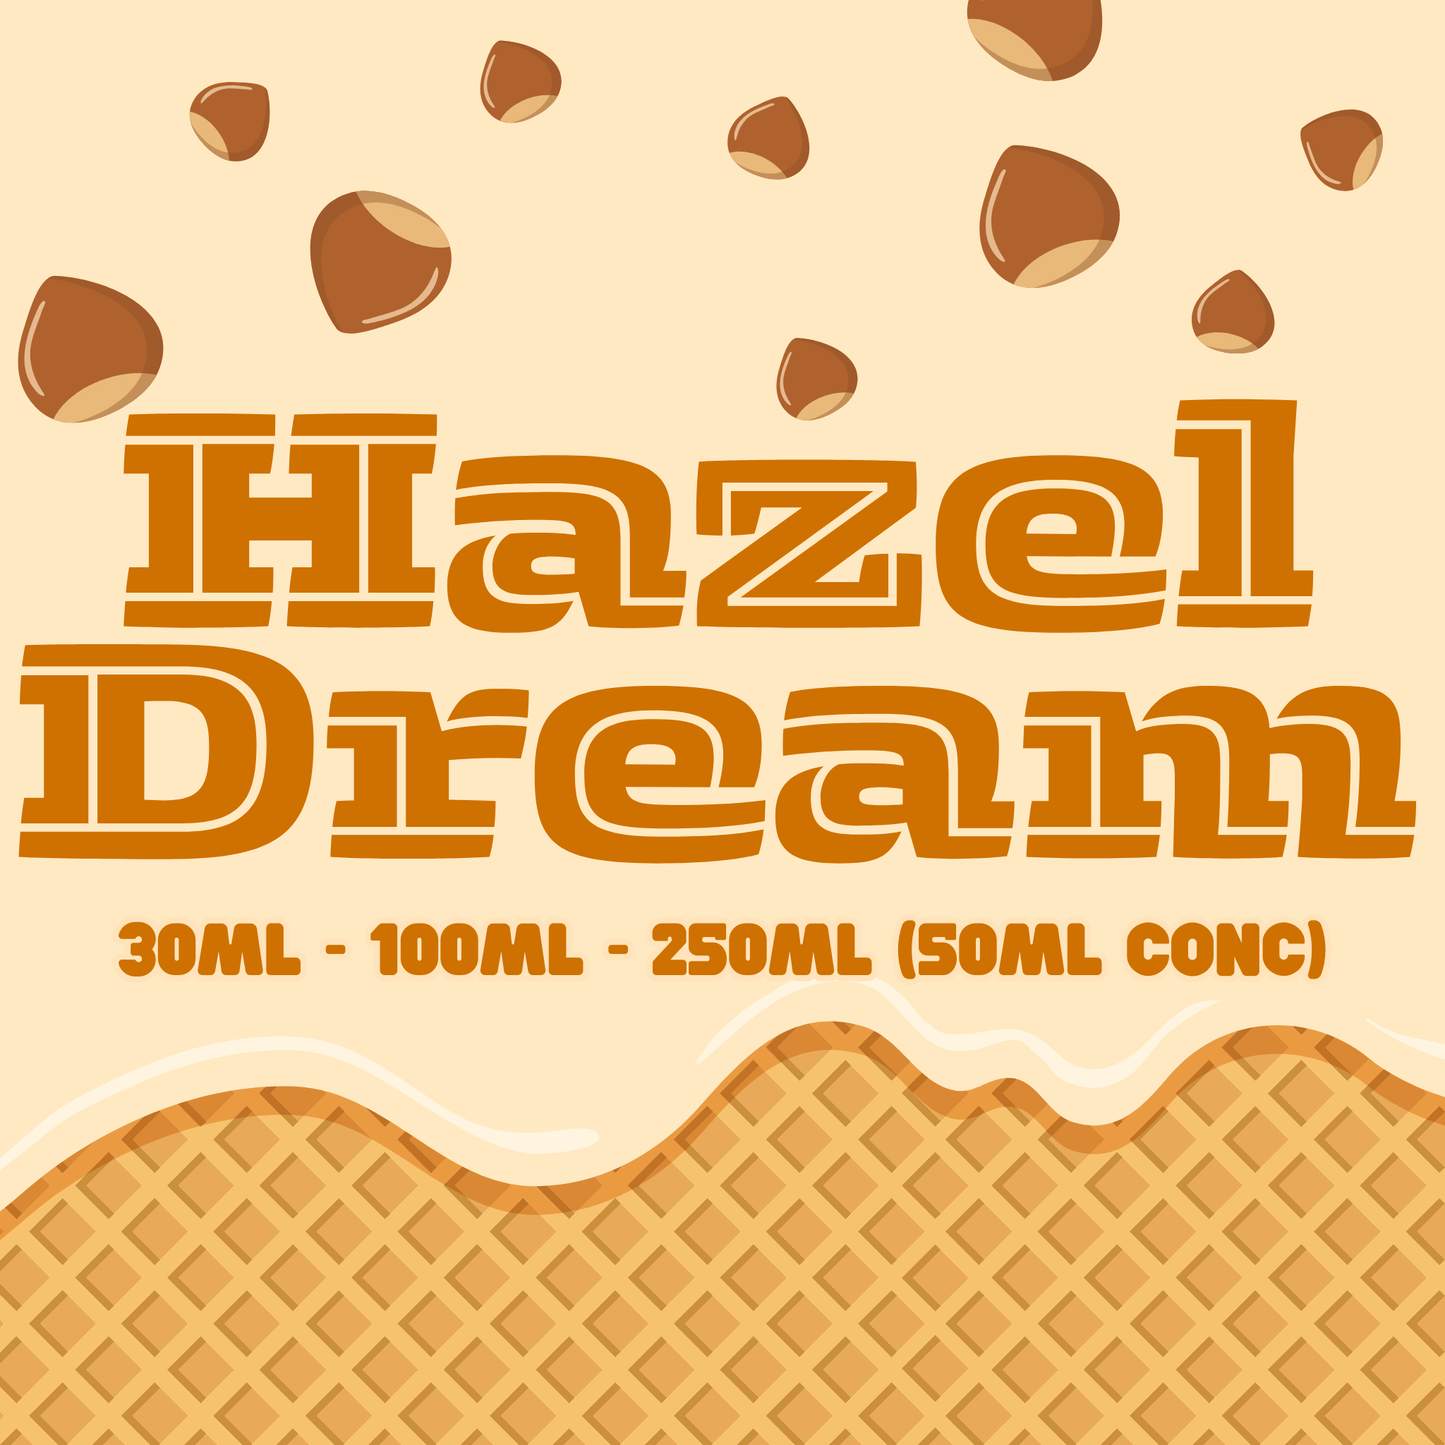 Hazel Dream - Flavour Craver - Flavour Craver